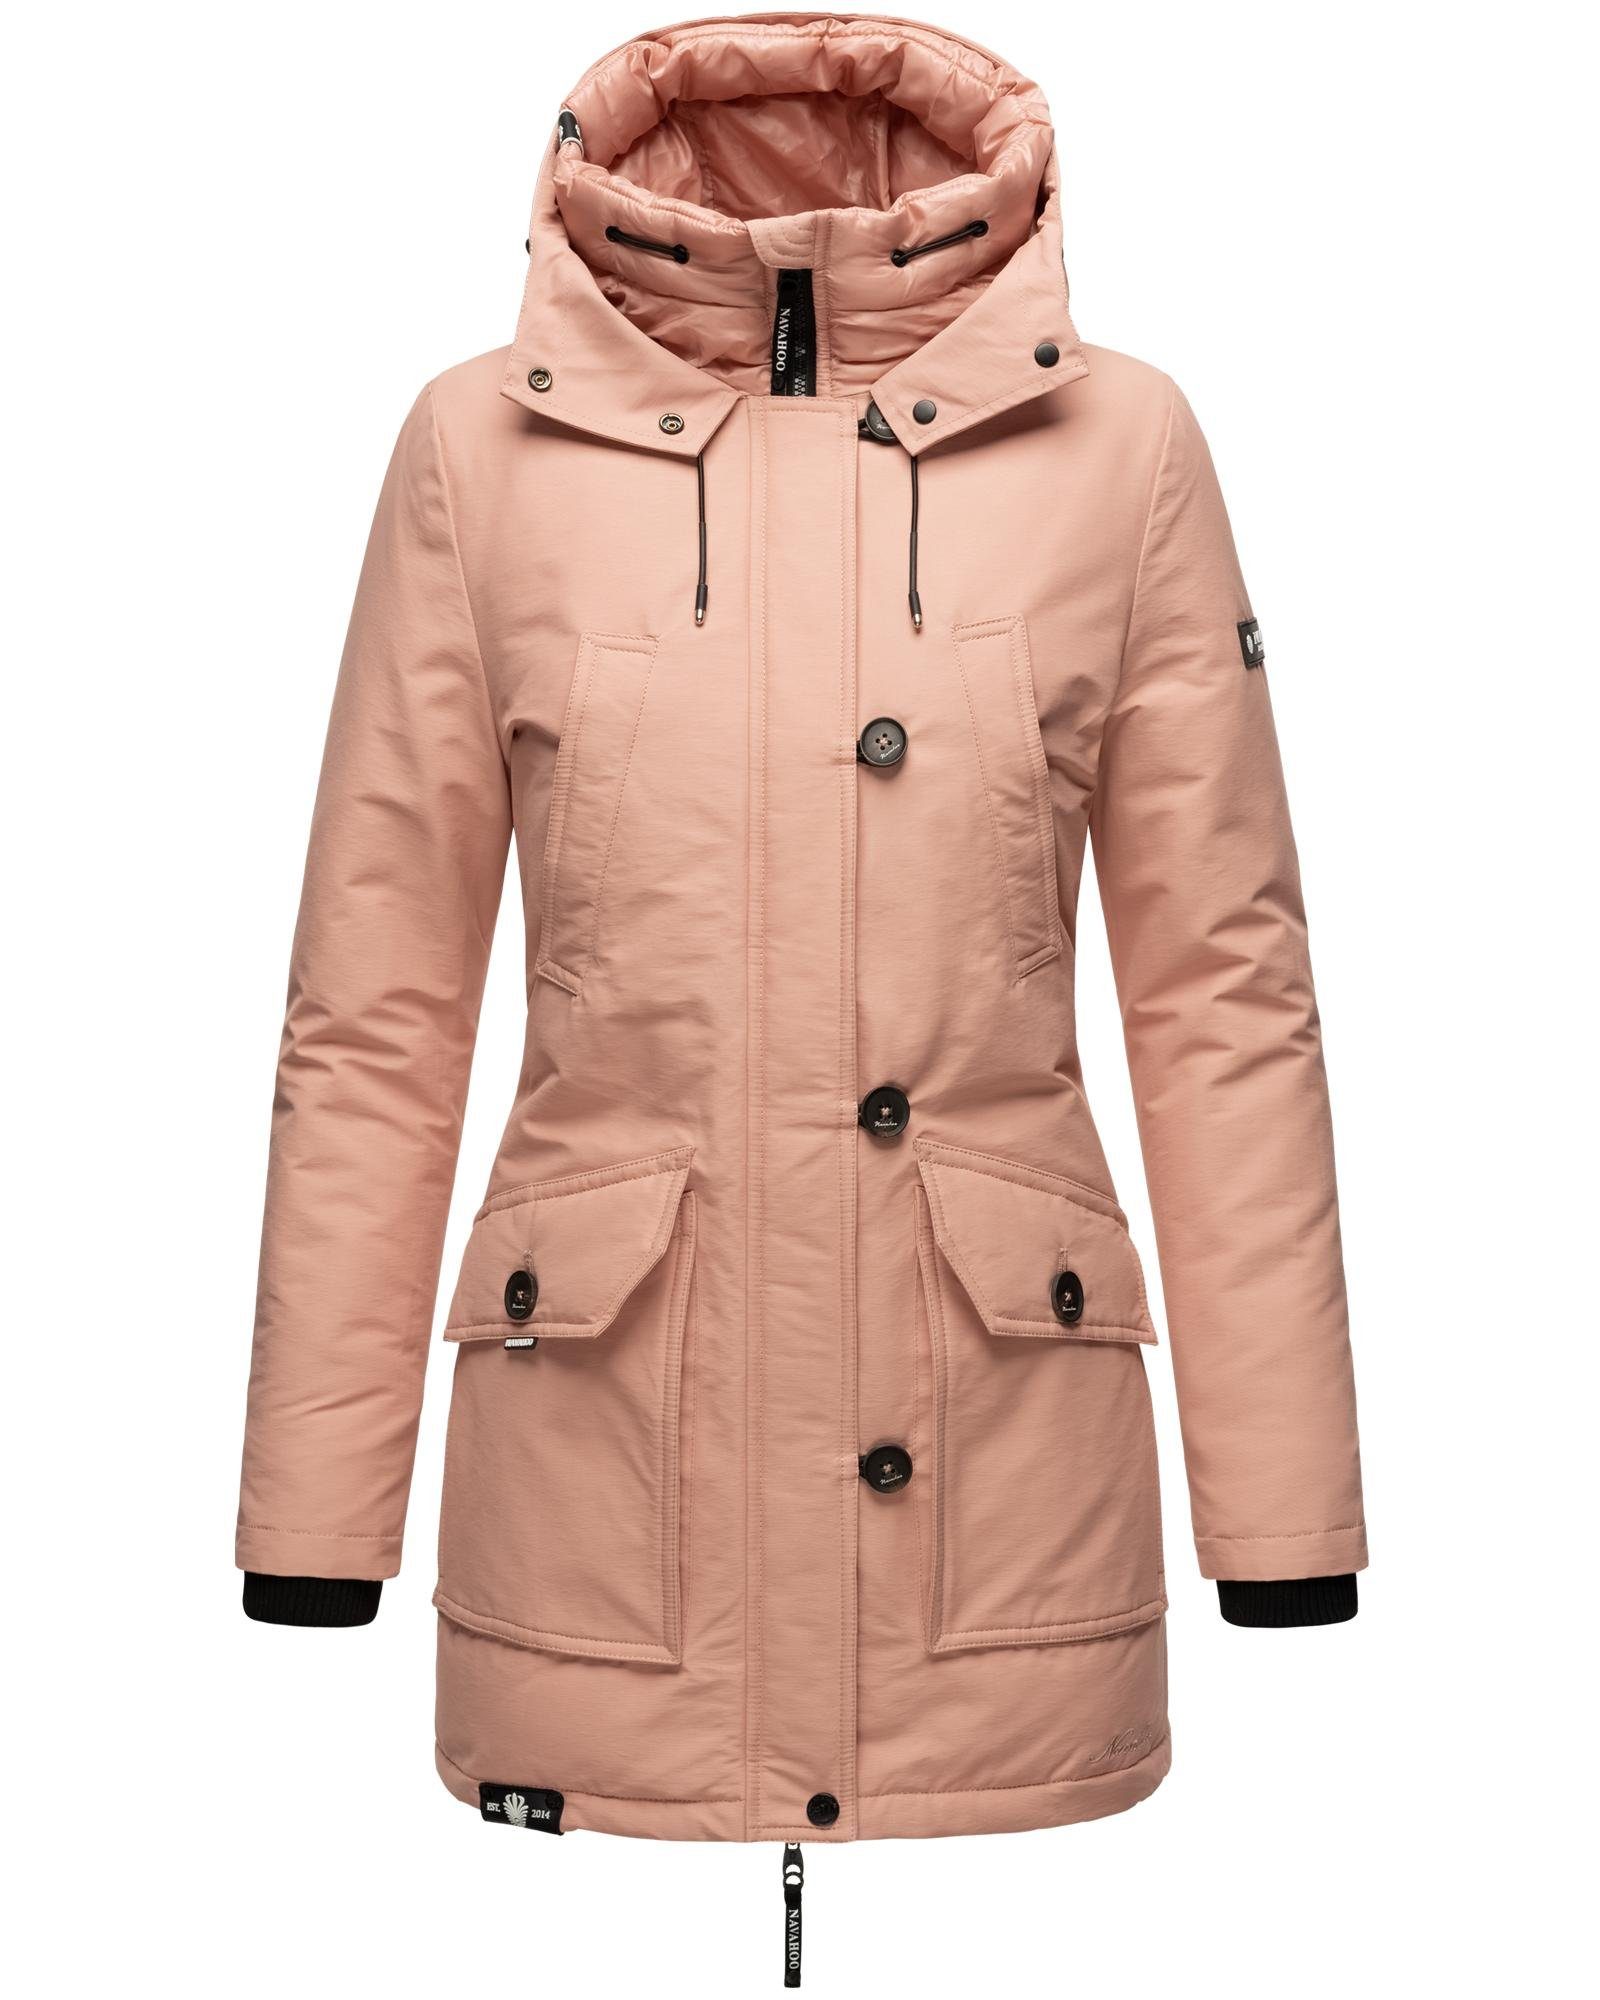 Rosa Winterjacken für Damen kaufen » Pinke Winterjacken | OTTO